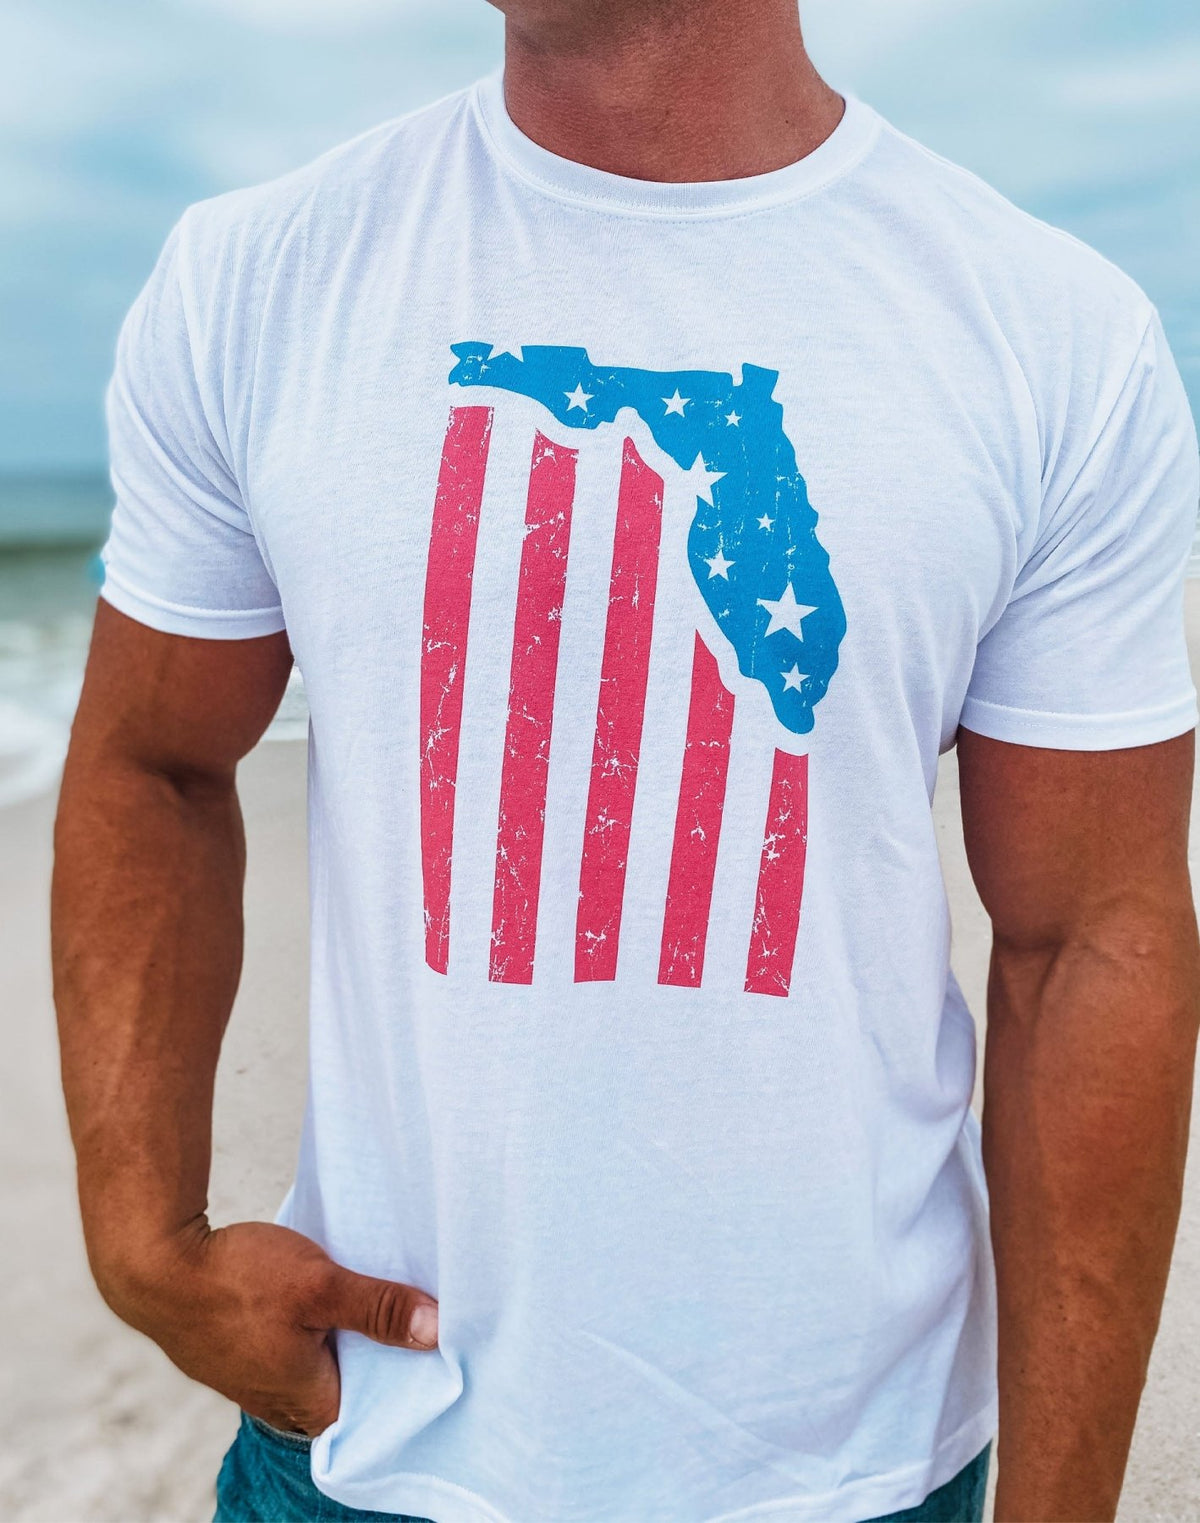 Florida State T - Shirt - 30A Gear - men tee